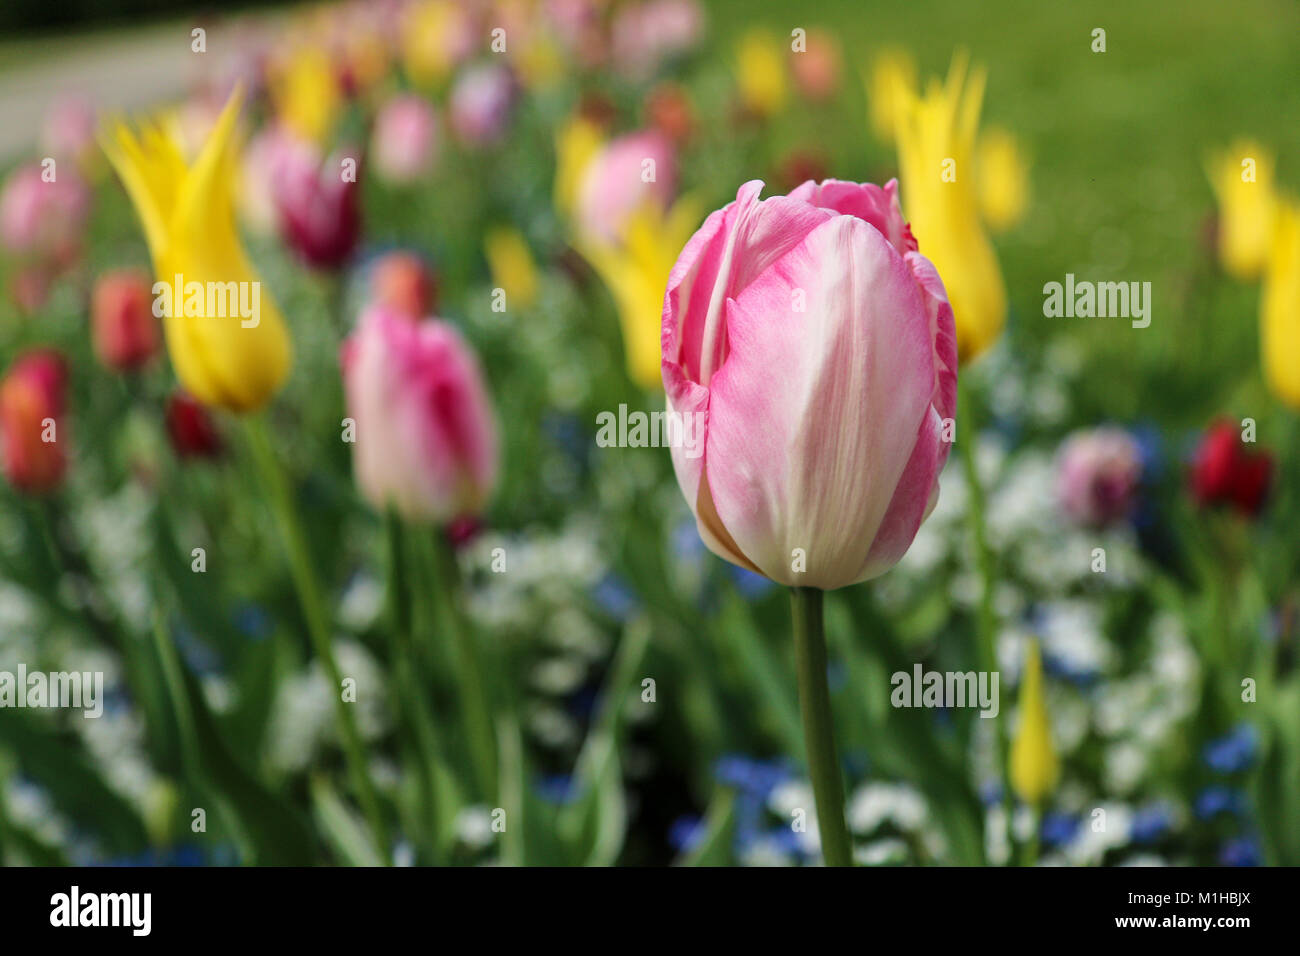 Una foto da un tulipano garden nei Paesi Bassi. La colorata tulip è in dettaglio tra gli altri. Fioriture bellissime sono ovunque Foto Stock